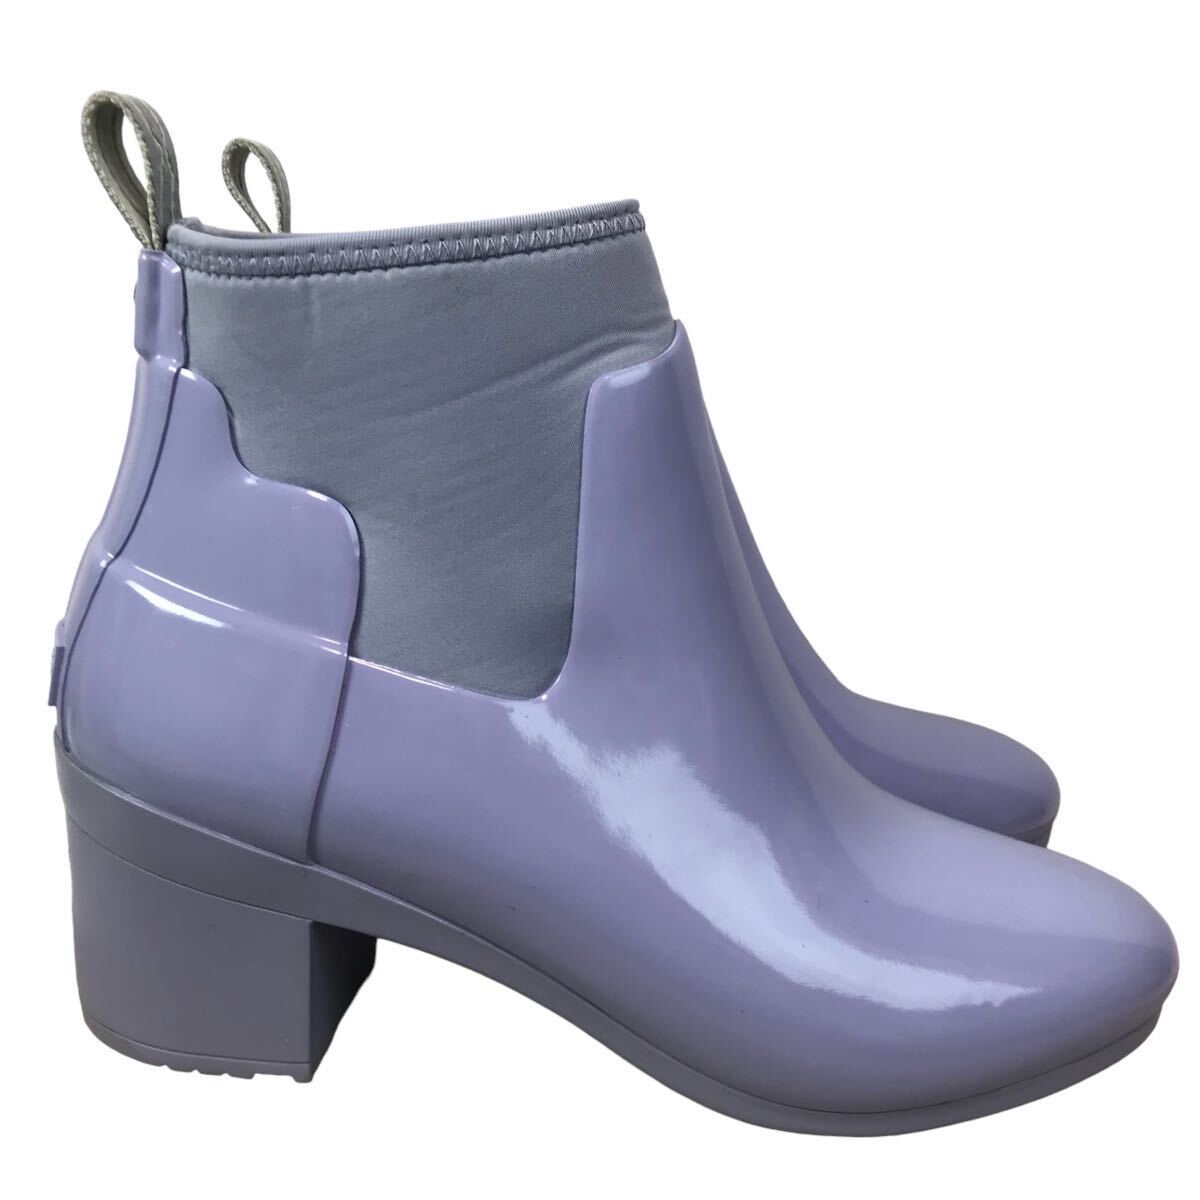 k22 HUNTER Hunter влагостойкая обувь резиновые сапоги Raver обувь лаванда UK6 light purple EU39 с ящиком хорошая вещь женский стандартный товар сезон дождей 